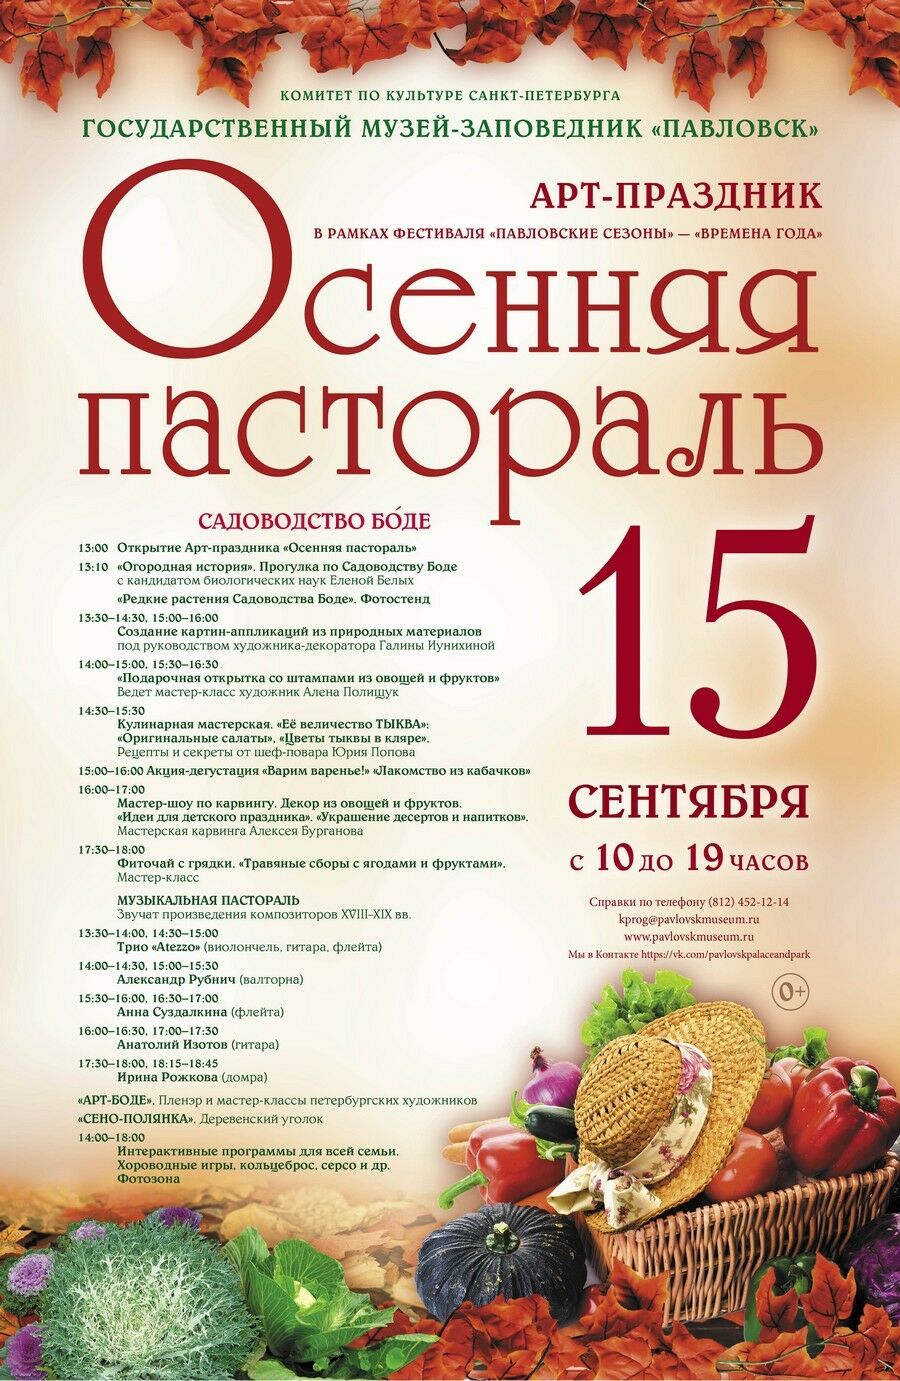 Арт-праздник «Осенняя пастораль» в Павловске